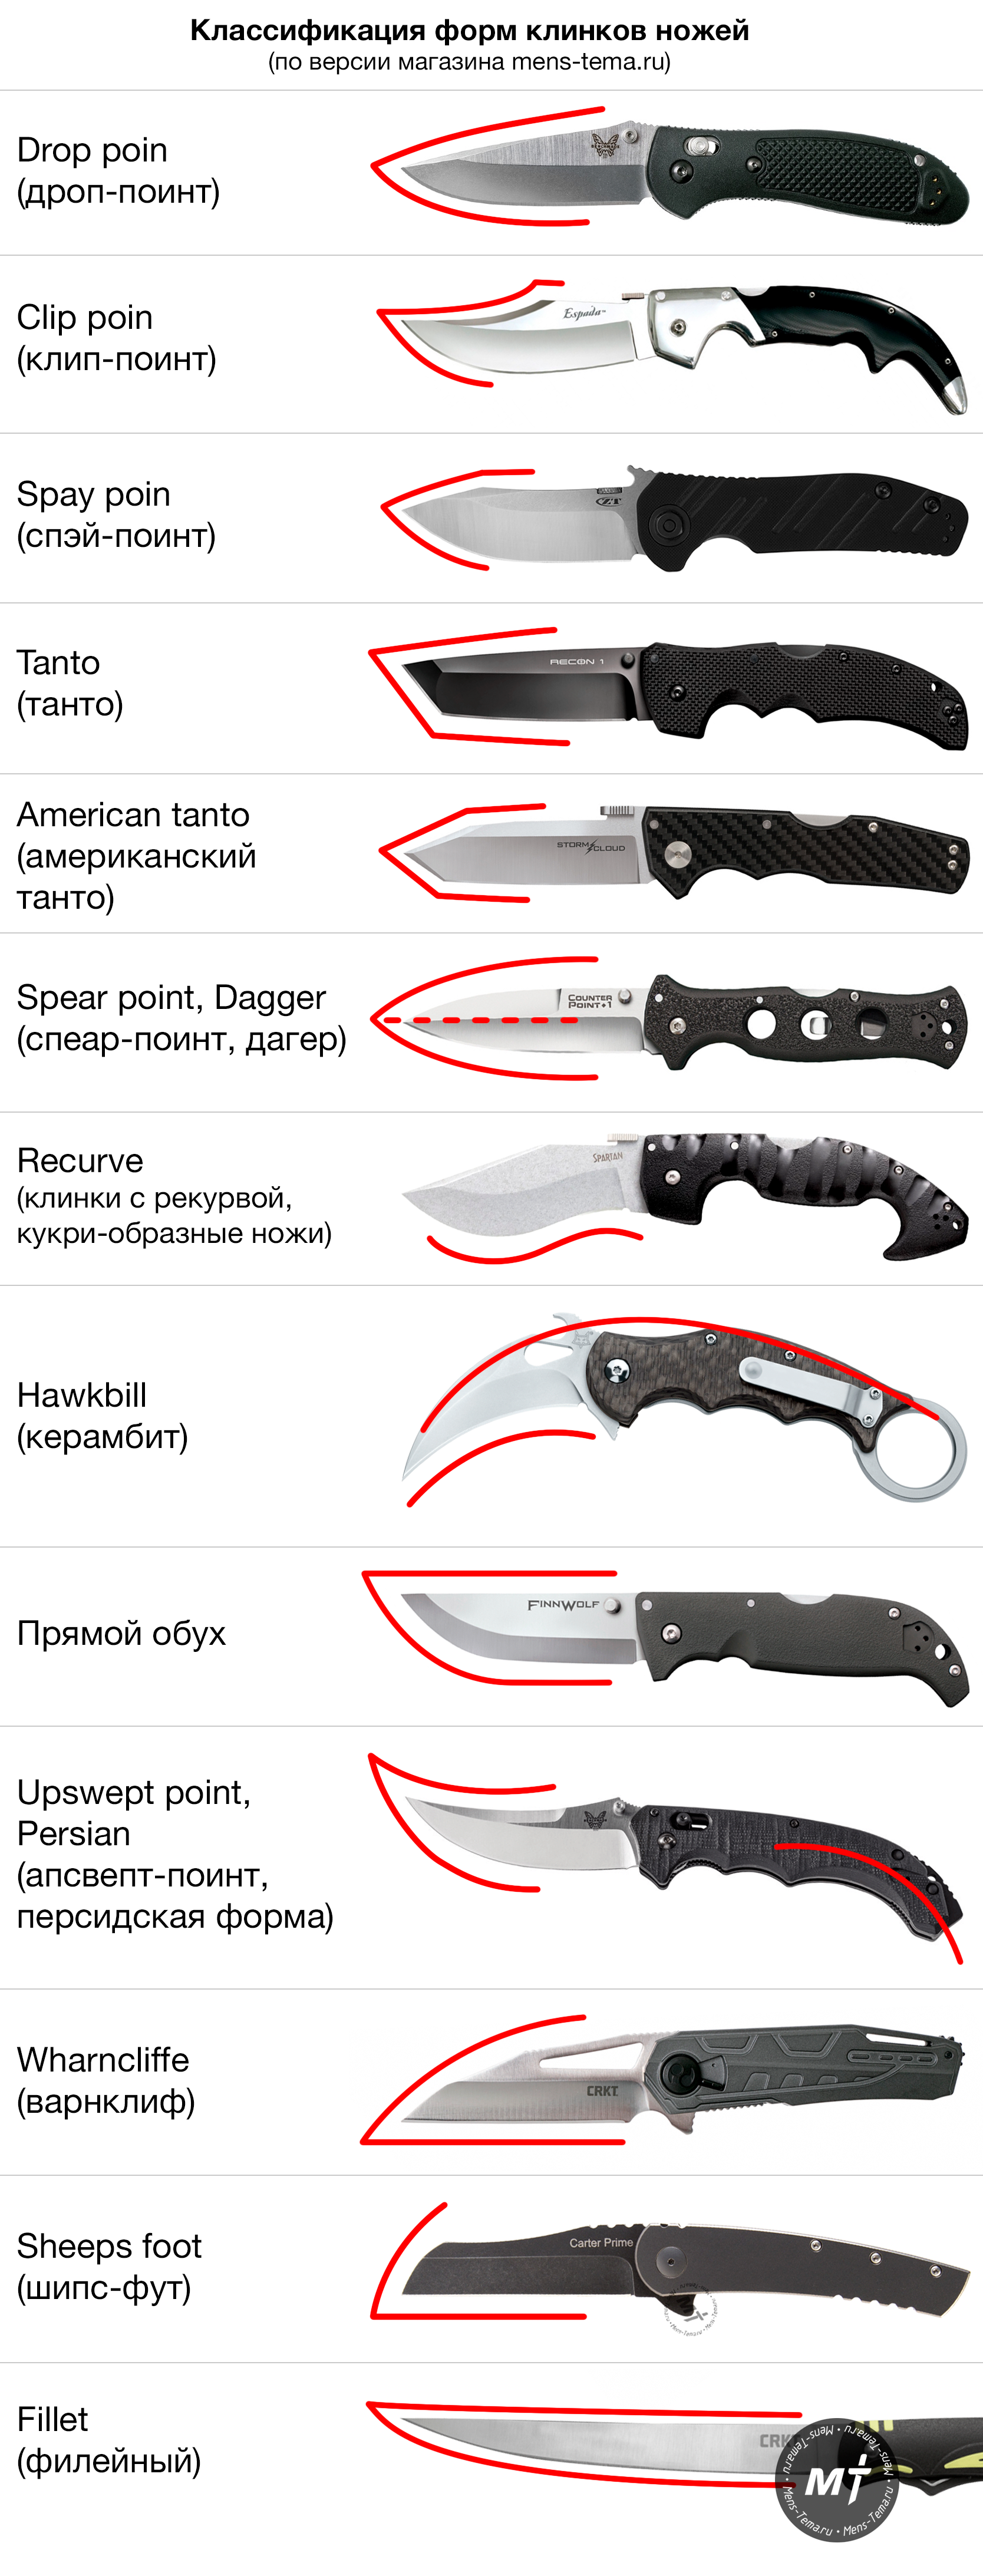 Типы ножей по форме клинка и рукояти. Формы лезвий ножей. Формы острия ножа. Название ножей по форме клинка.